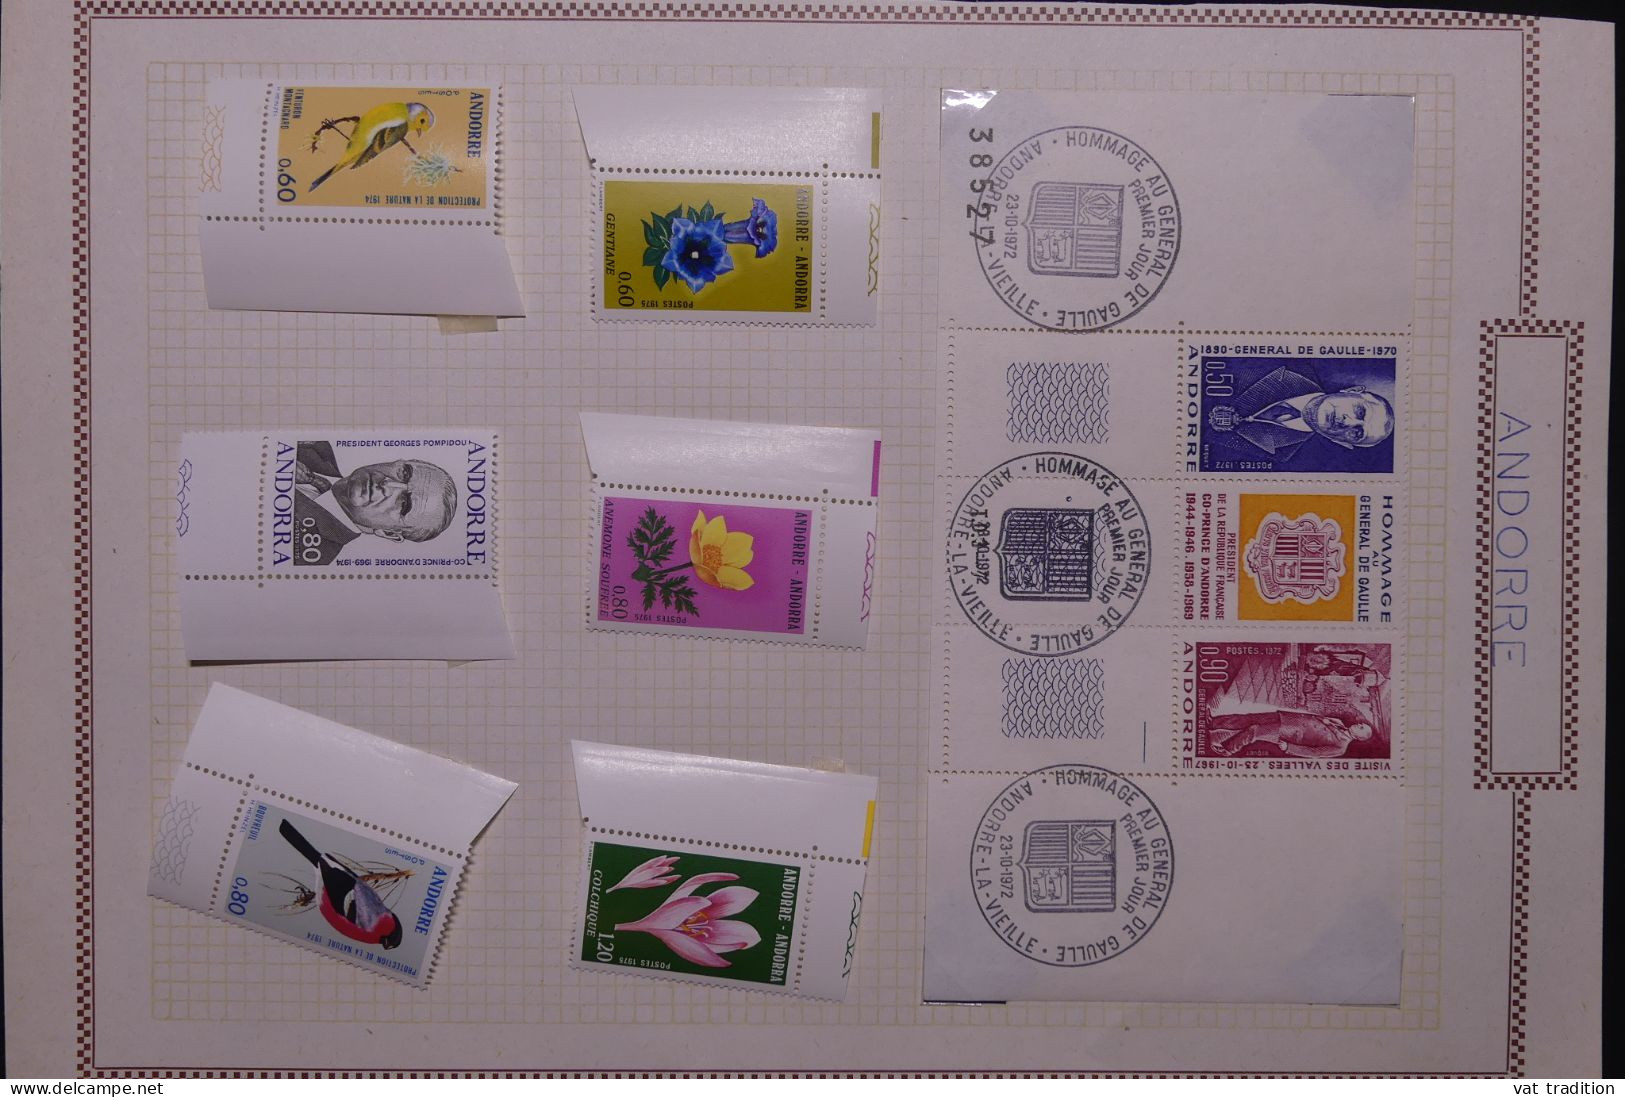 ANDORRE - Petite collection mais tous les timbres sont luxes - Les charnières sont sur les bords de feuille - A 63